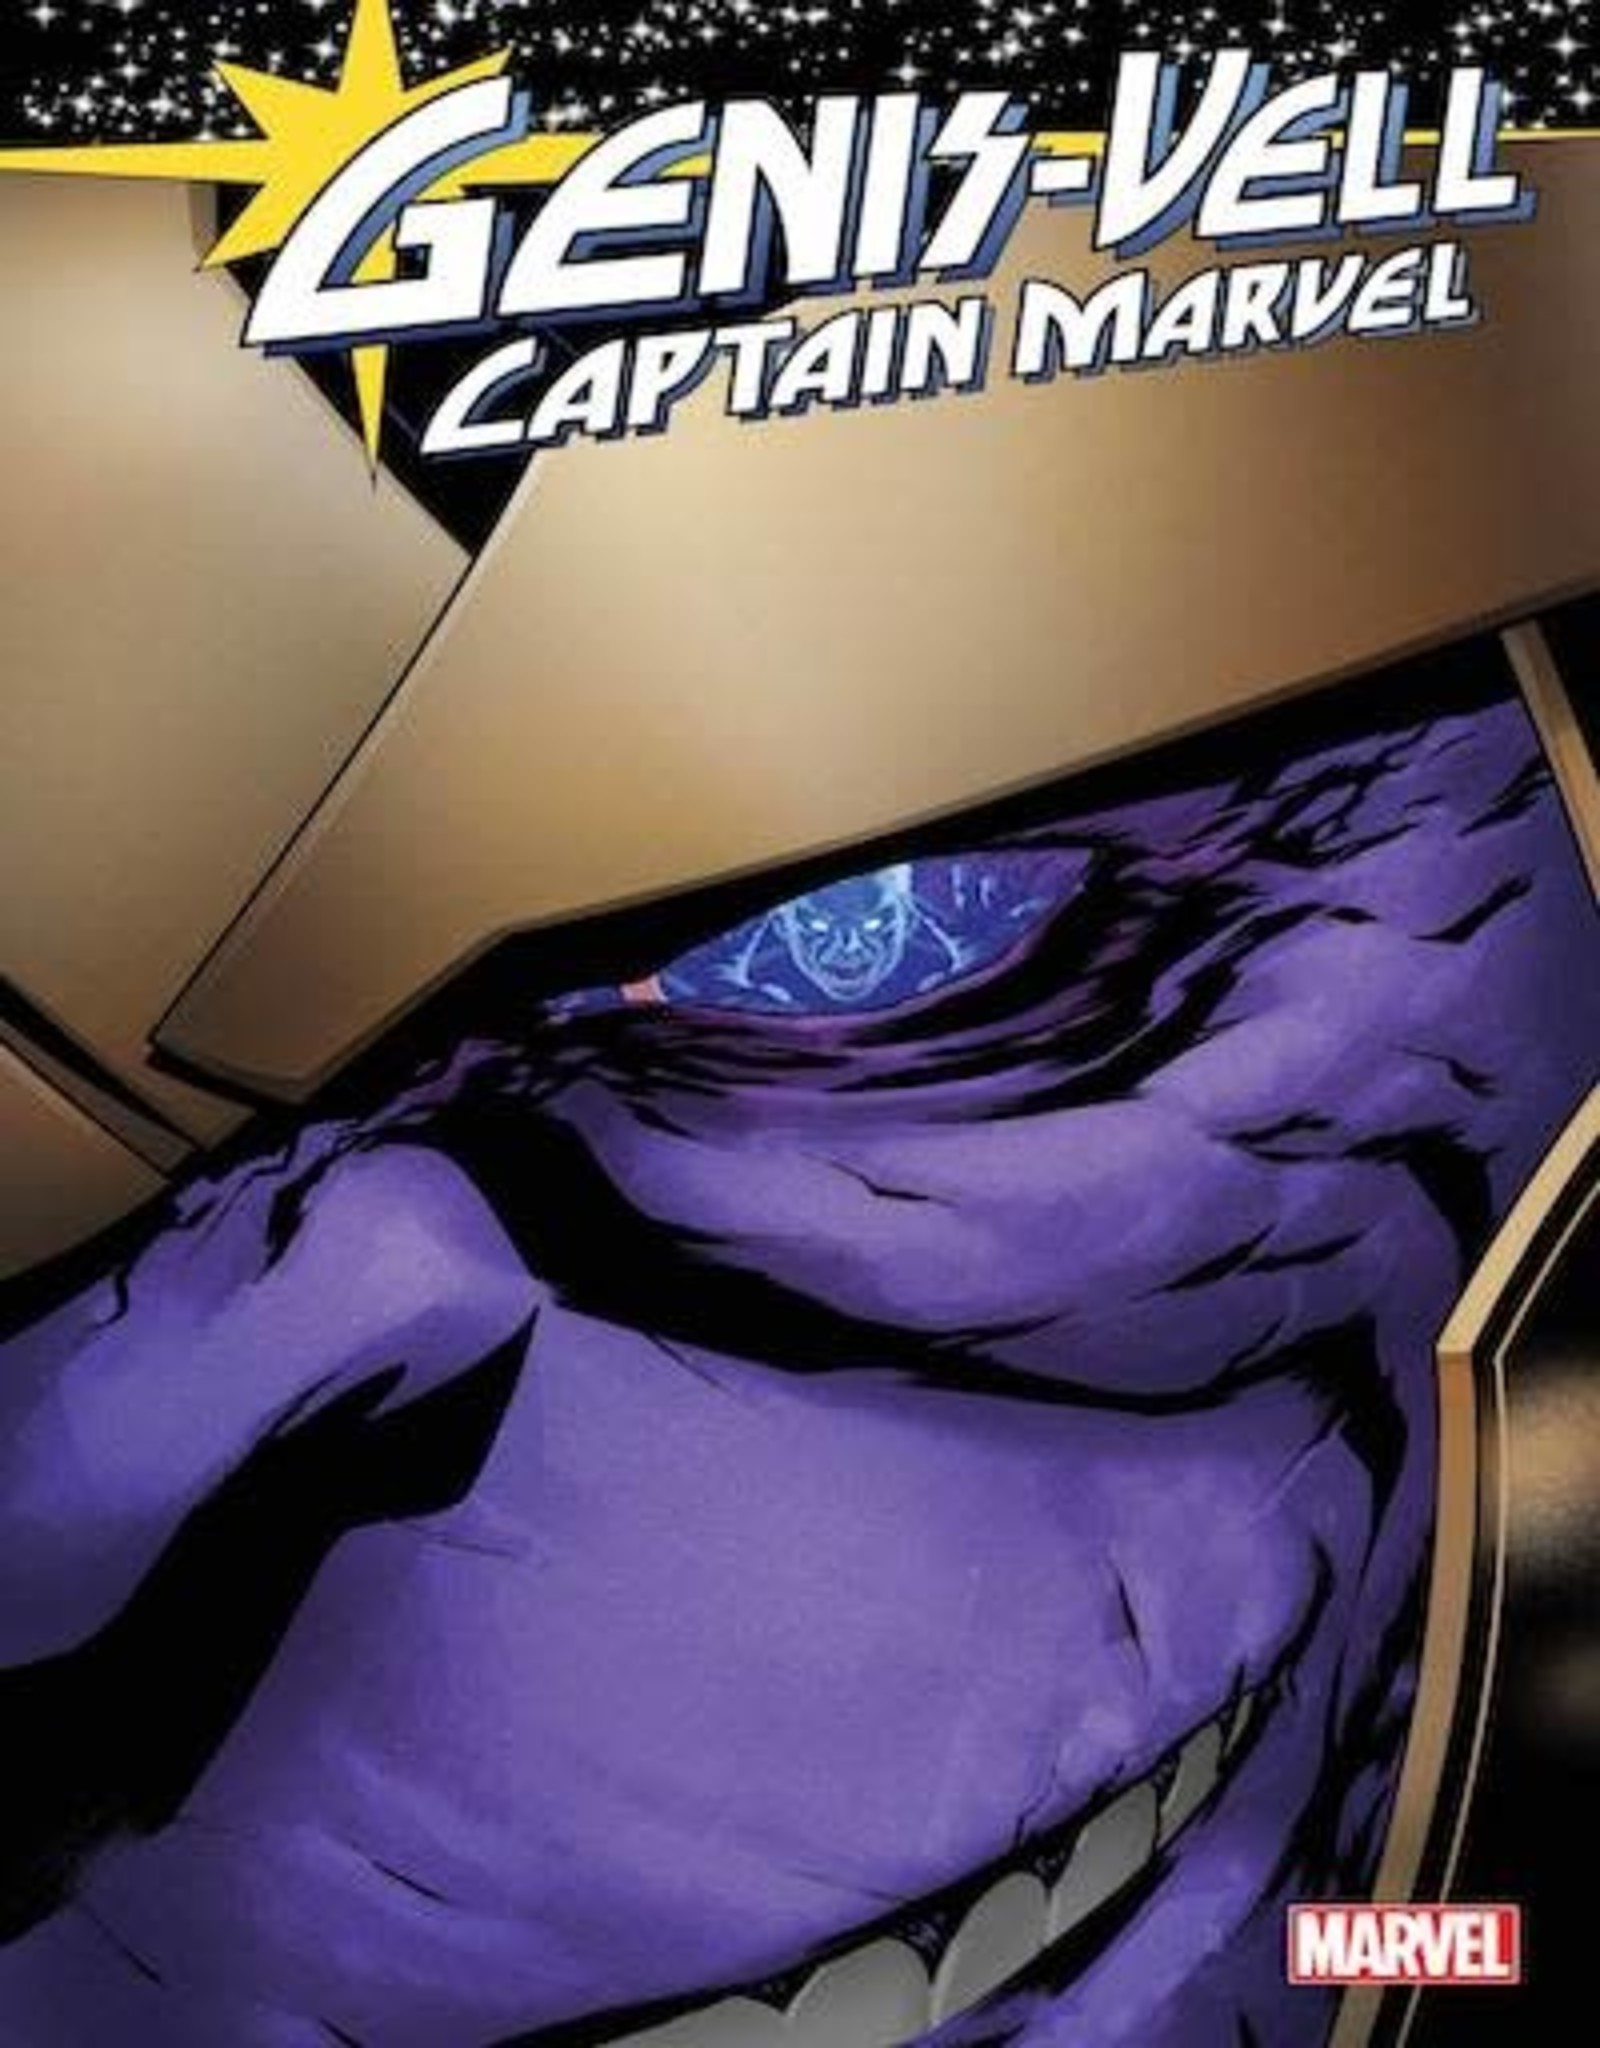 Marvel Comics Genis-Vell Captain Marvel #2